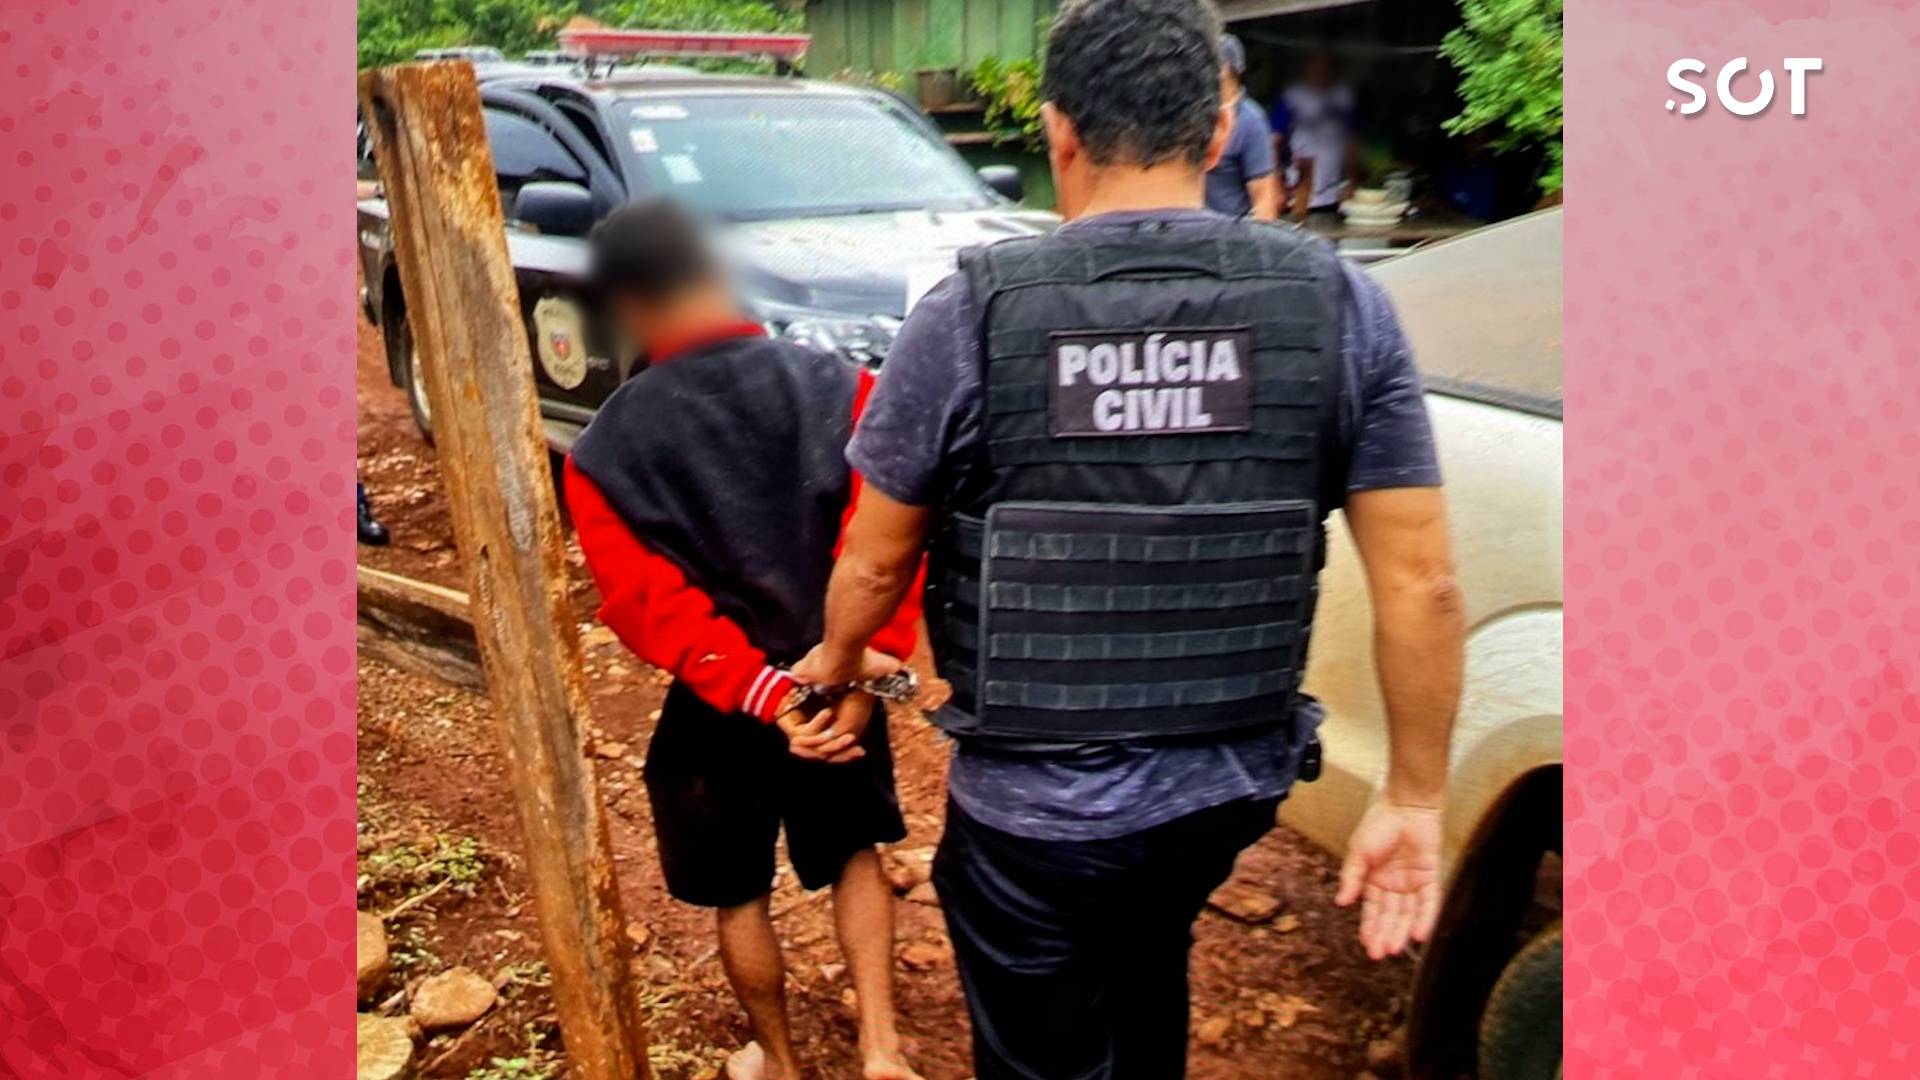 Polícia Civil prende suspeito de feminicídio atrás de Capela Mortuária em Quedas do Iguaçu